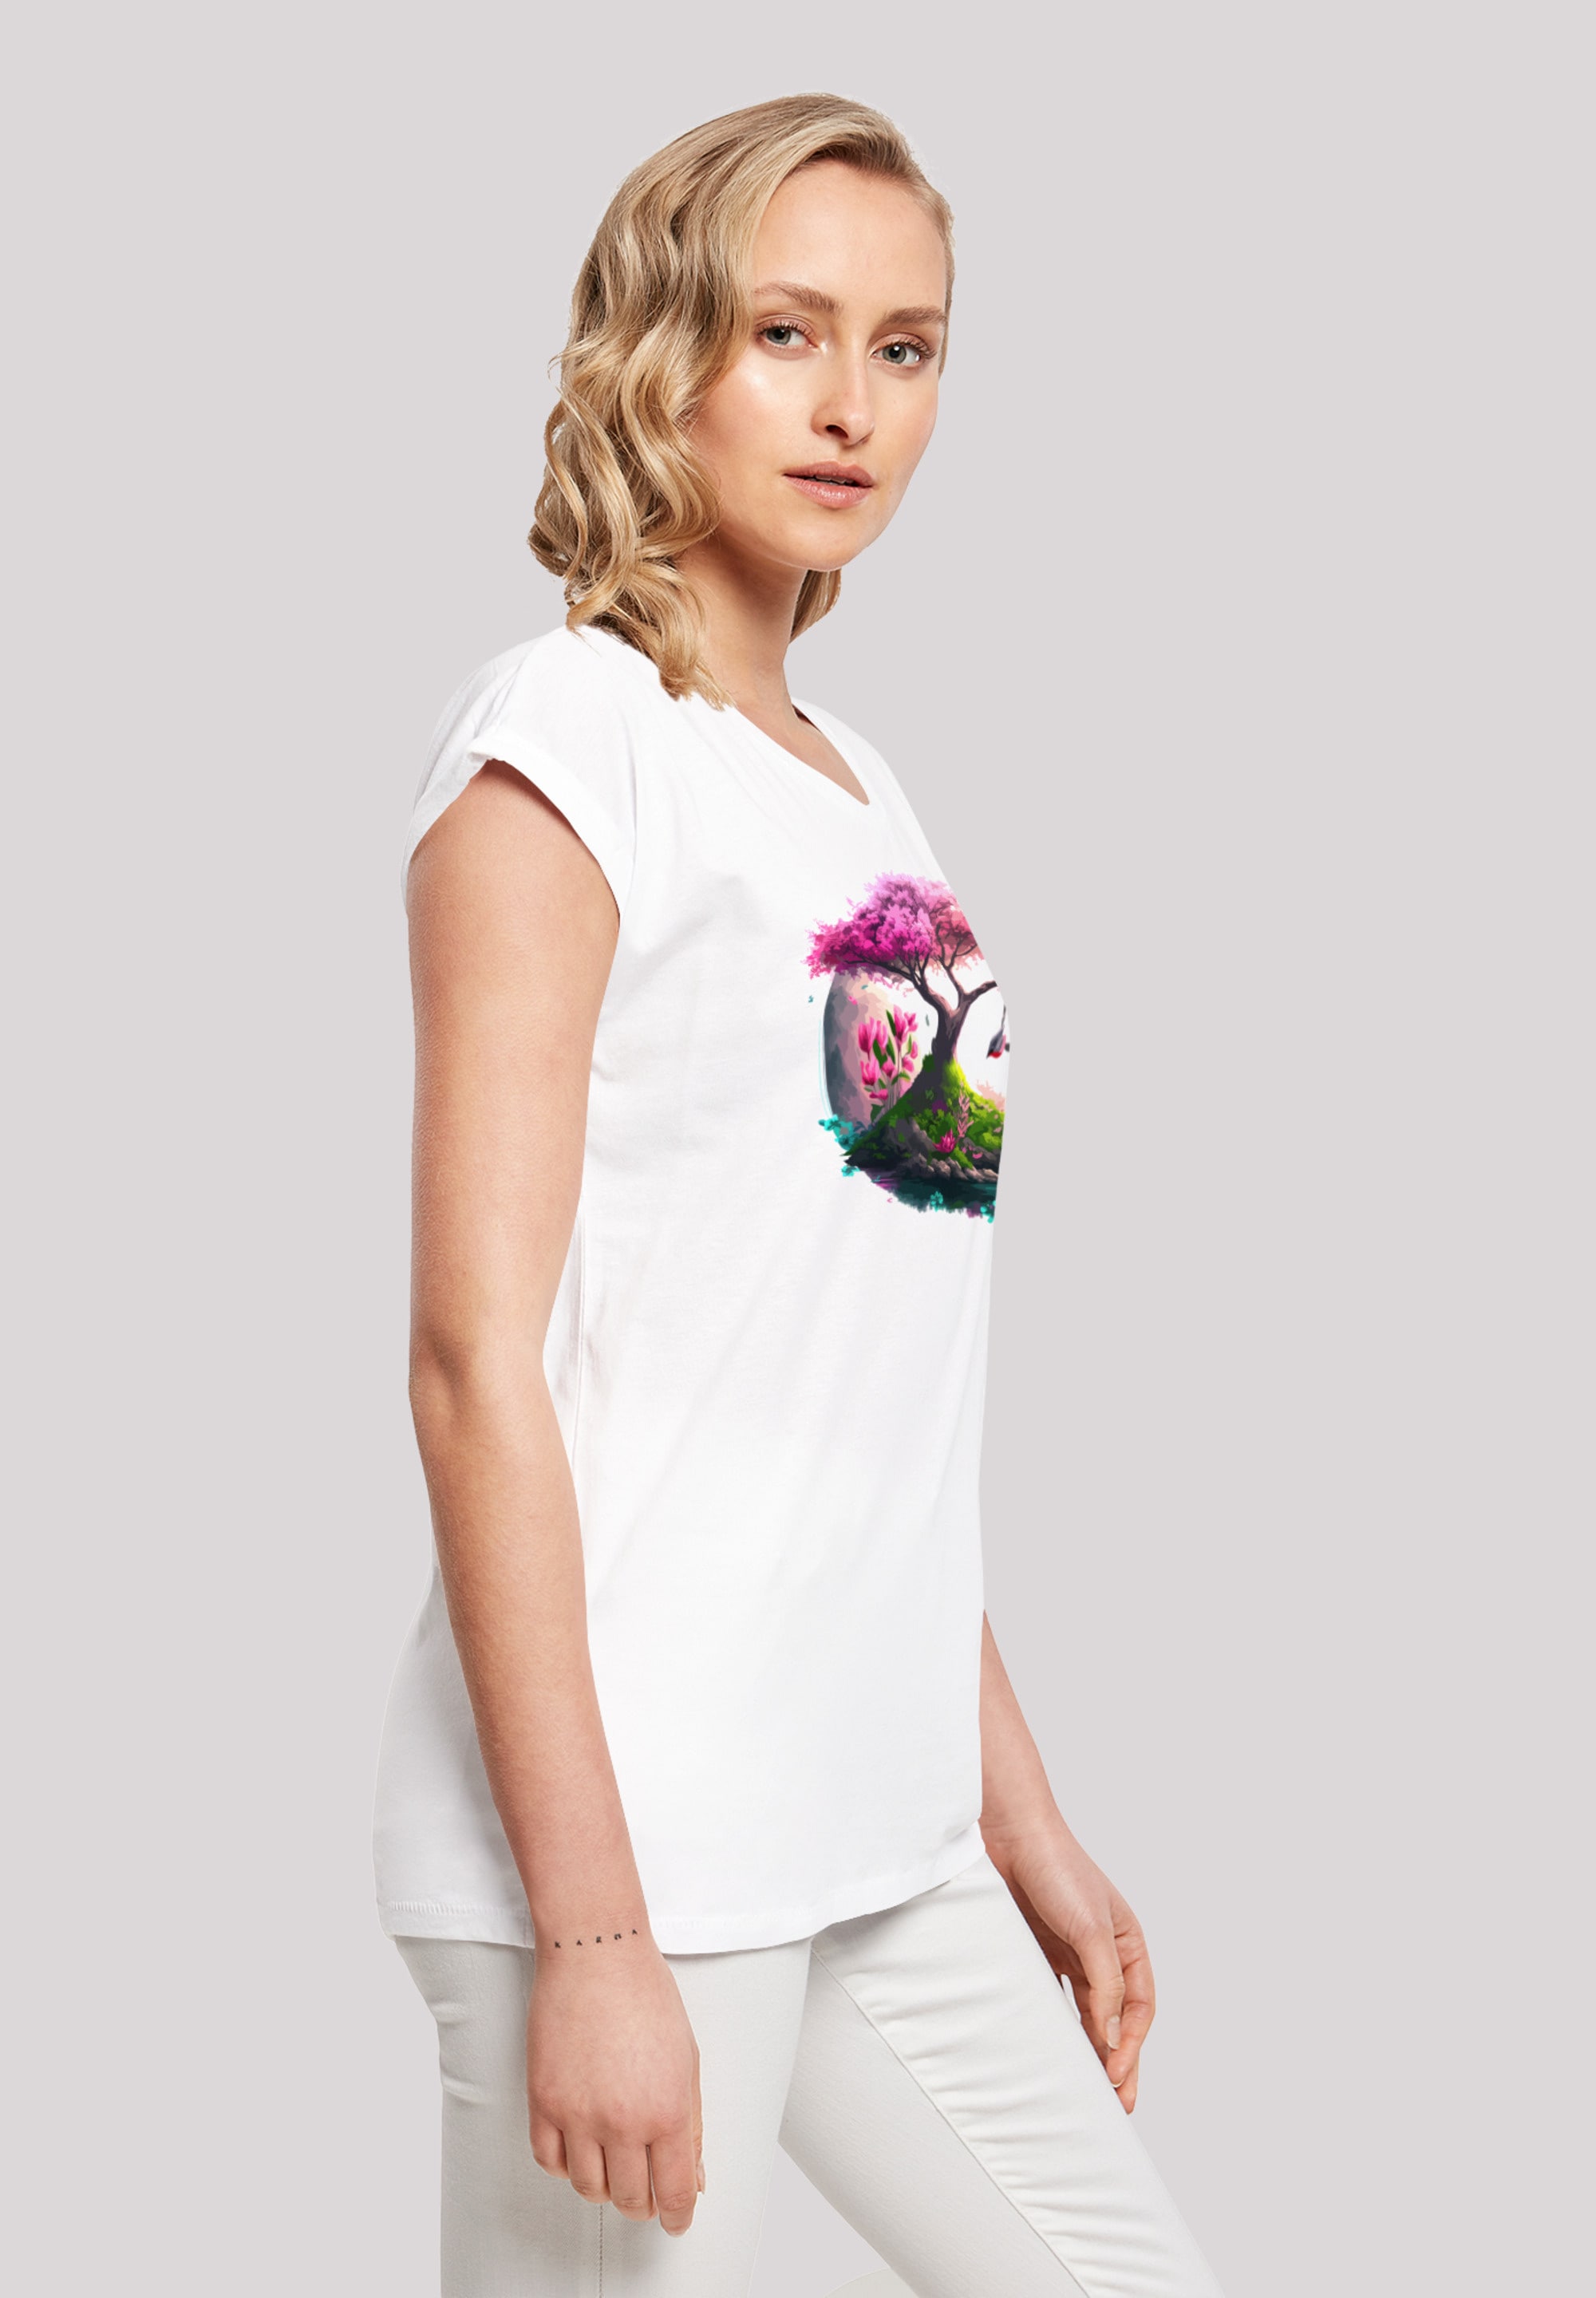 »Kirschblüten F4NT4STIC T-Shirt Print bestellen Baum«,